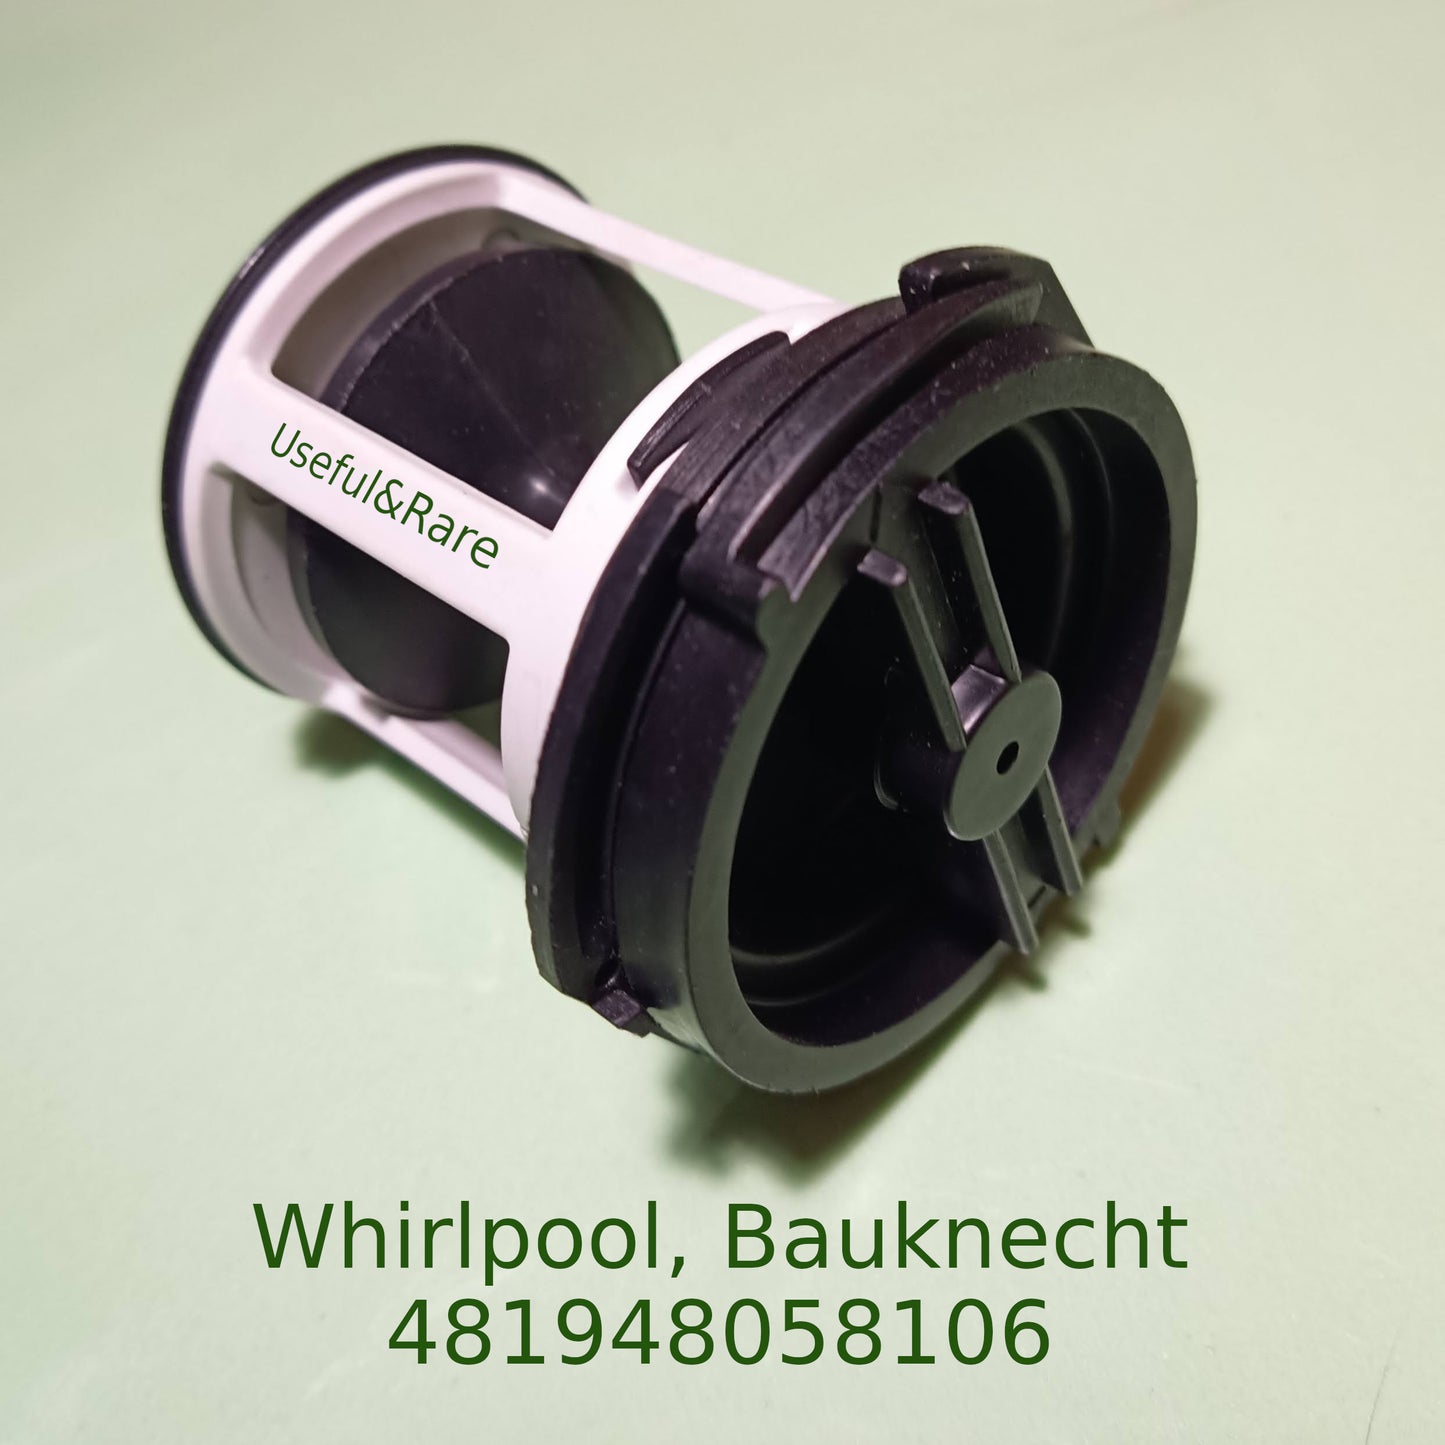 Whirlpool, Bauknecht (481948058106)